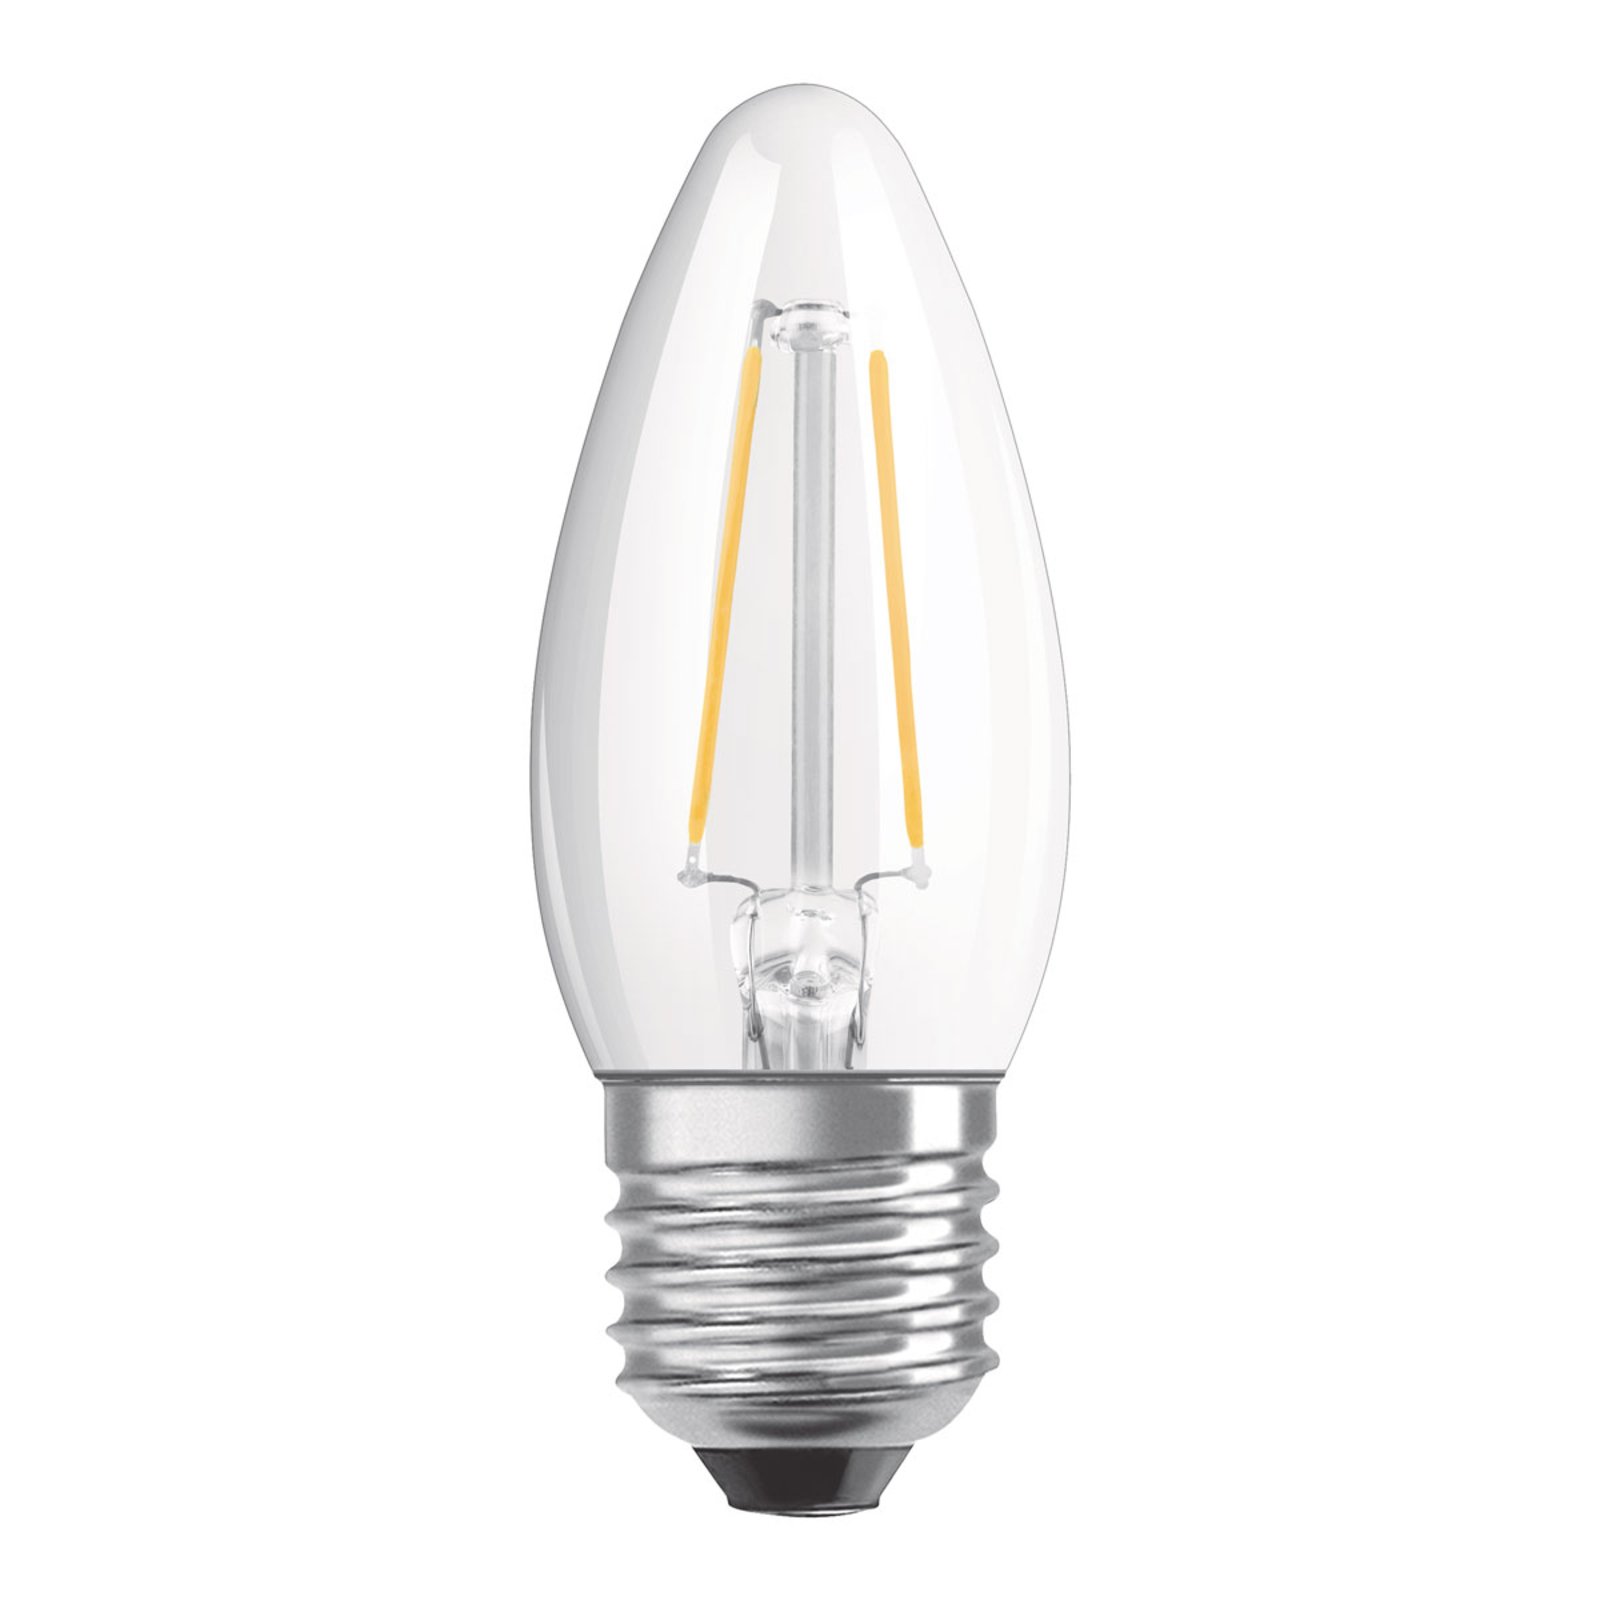 OSRAM LED sviečka E27 4,8W teplá biela stmievateľn